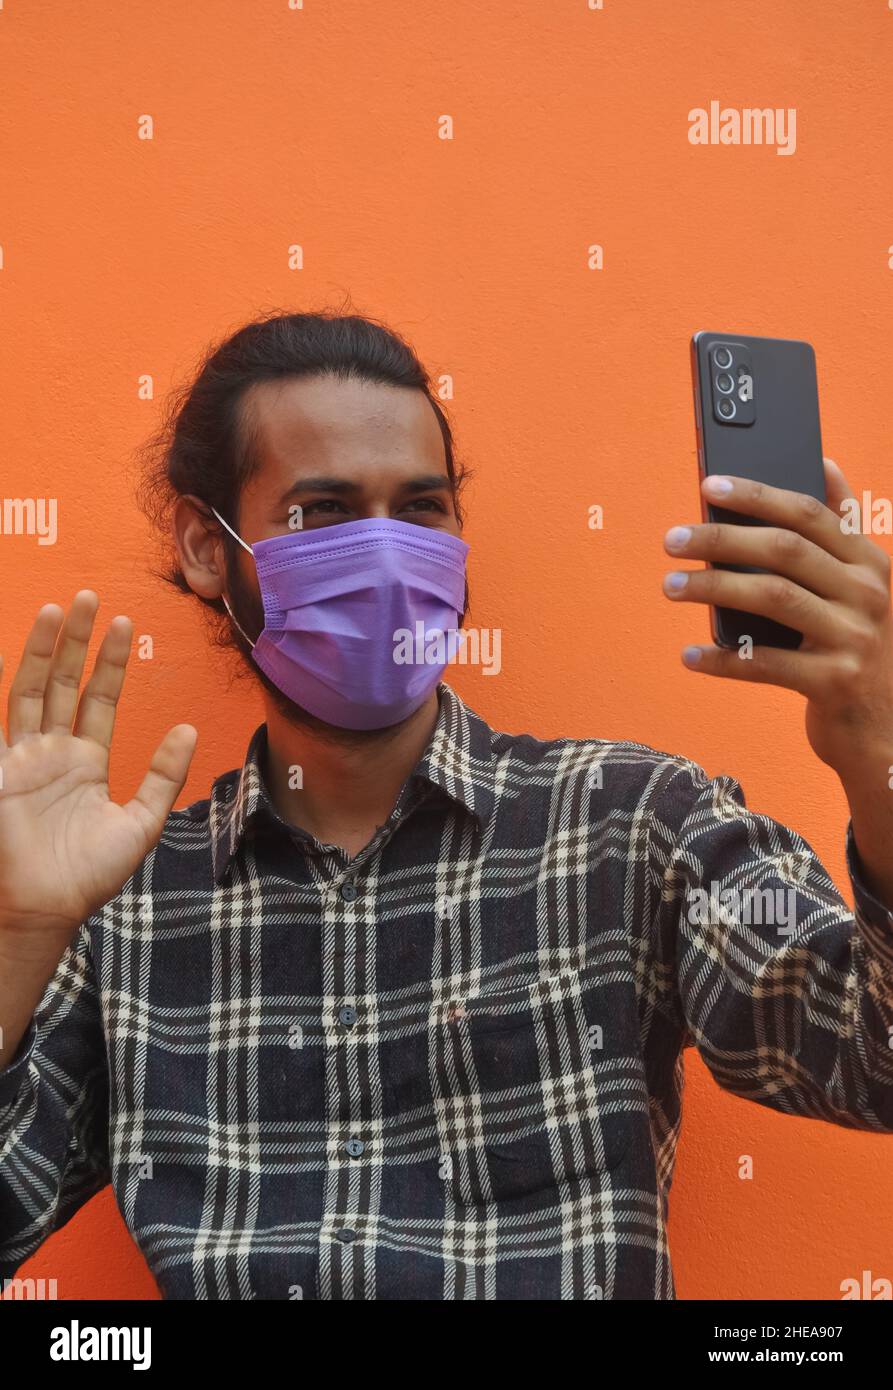 Primo piano di un giovane ragazzo che indossa la maschera facciale, che dice ciao con ondeggiare la mano a qualcuno mentre videochiama, posando contro il muro arancione. Foto Stock